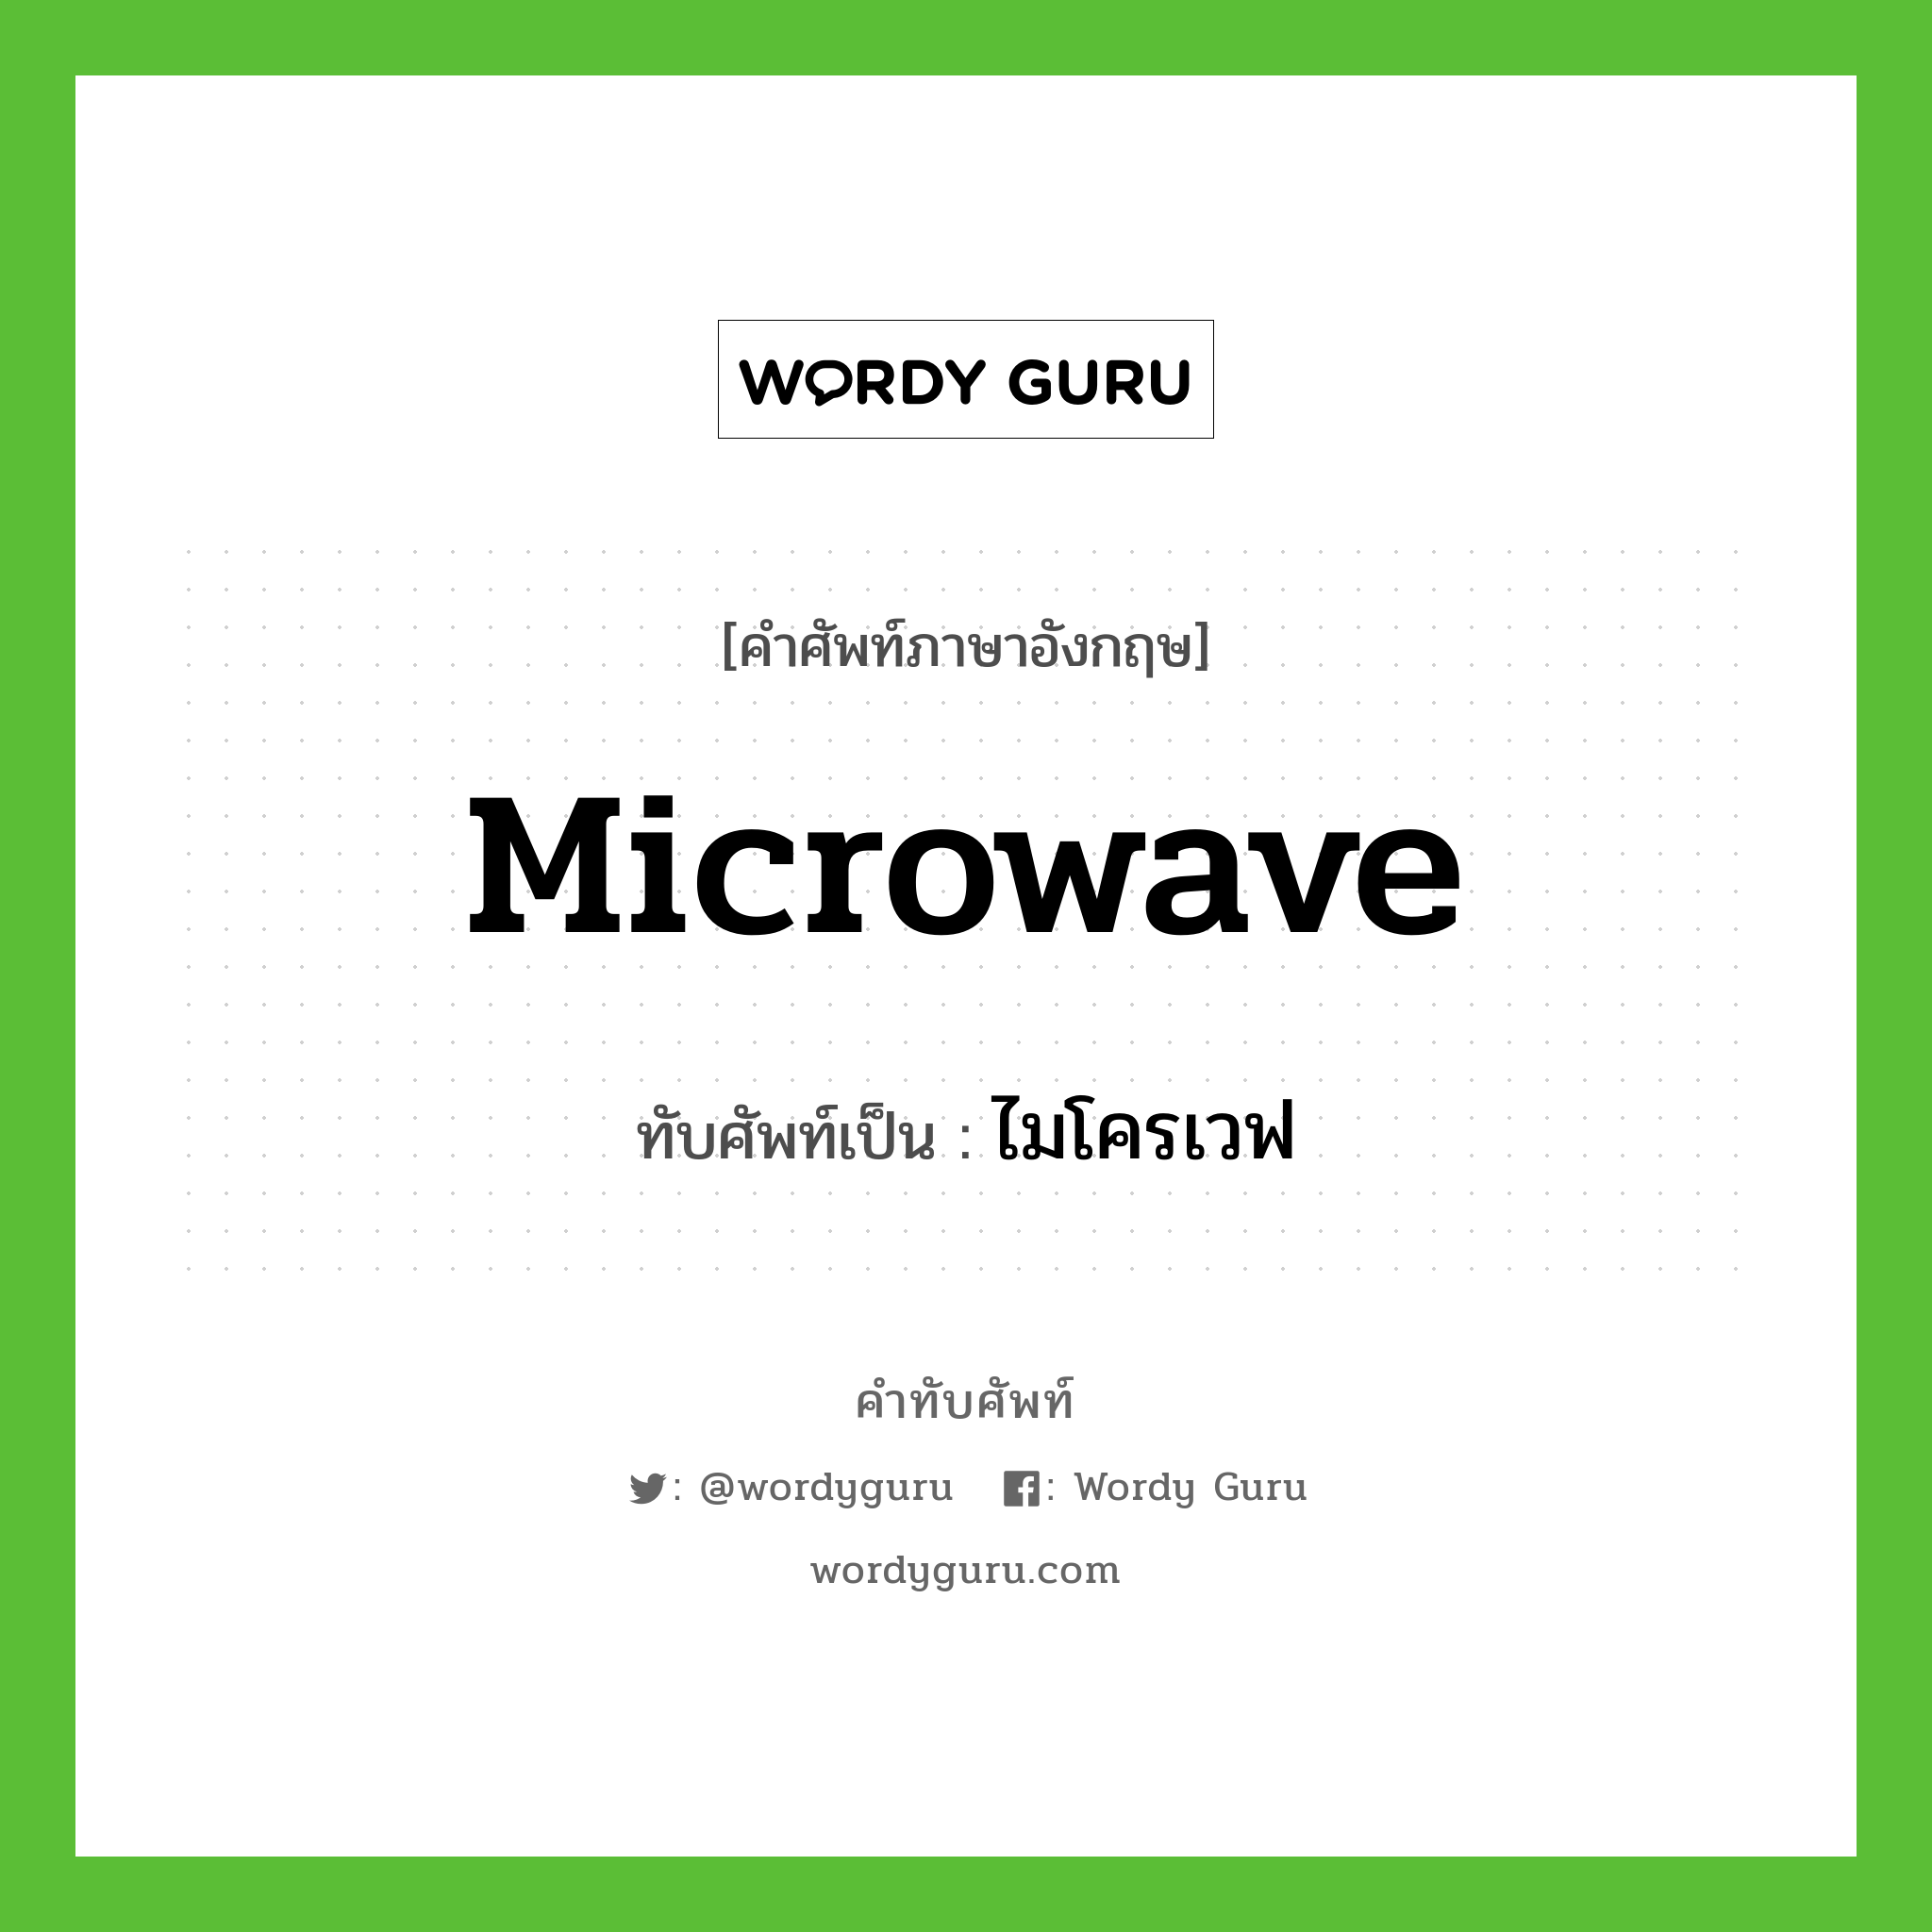 microwave เขียนเป็นคำไทยว่าอะไร?, คำศัพท์ภาษาอังกฤษ microwave ทับศัพท์เป็น ไมโครเวฟ